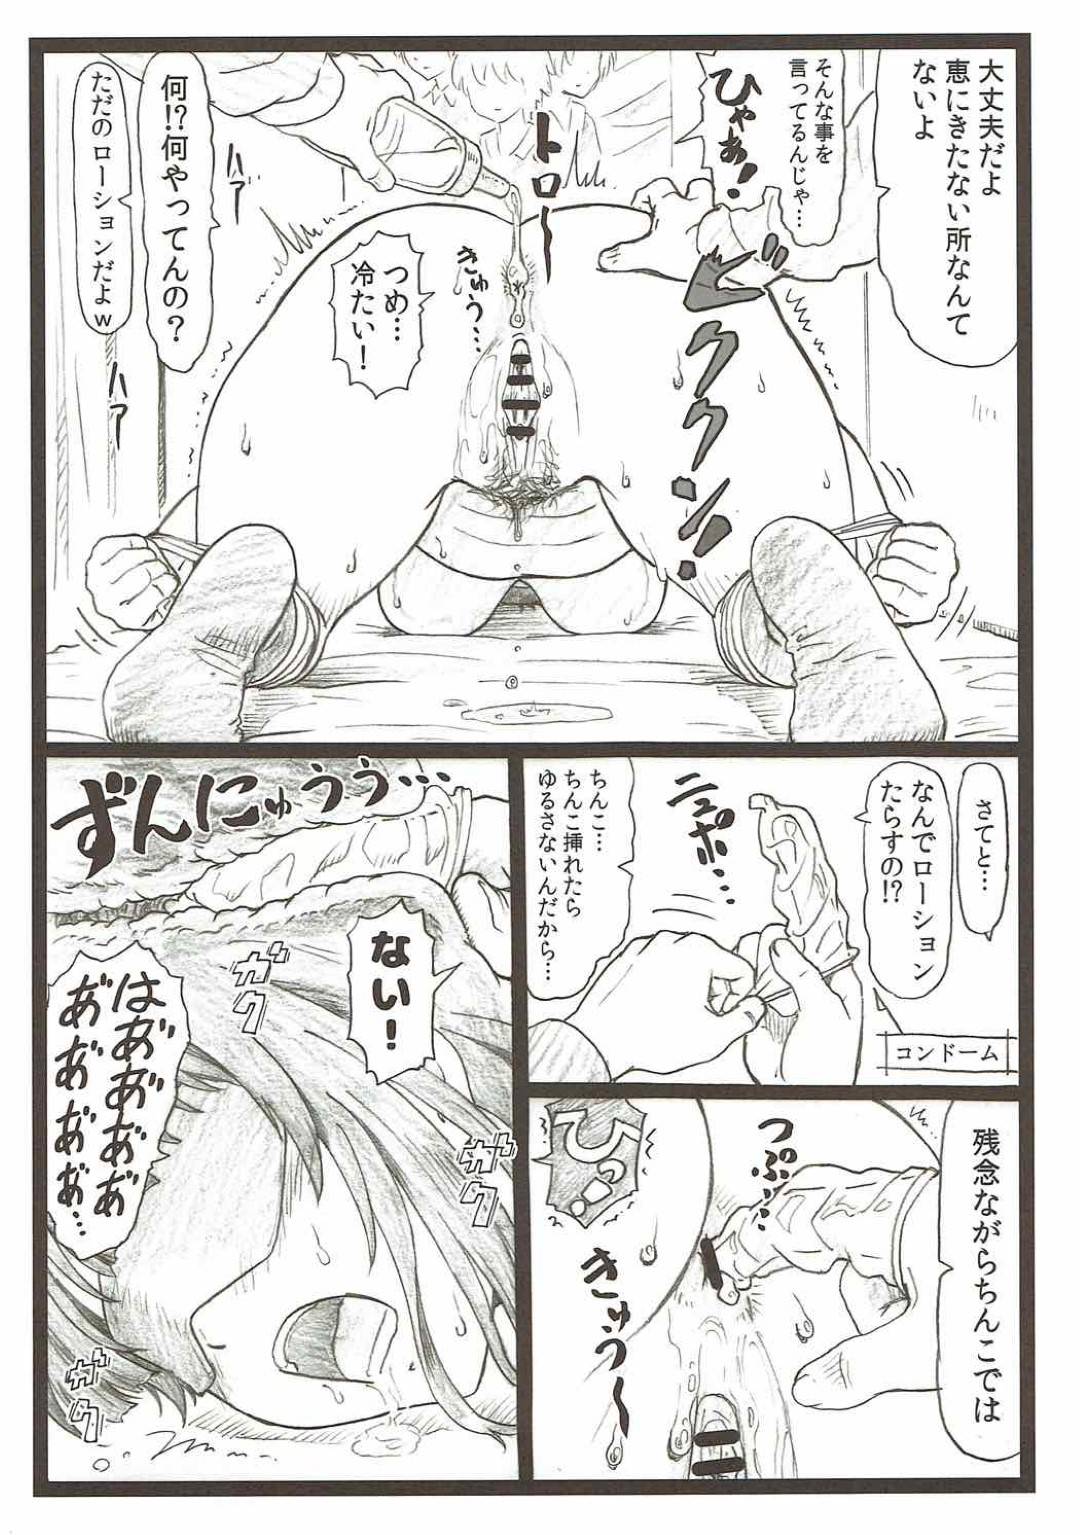 【エロ漫画】目隠し拘束された加藤は安芸に身体を弄られイカされまくり生ハメでイチャラブセックス【大蔵一也】